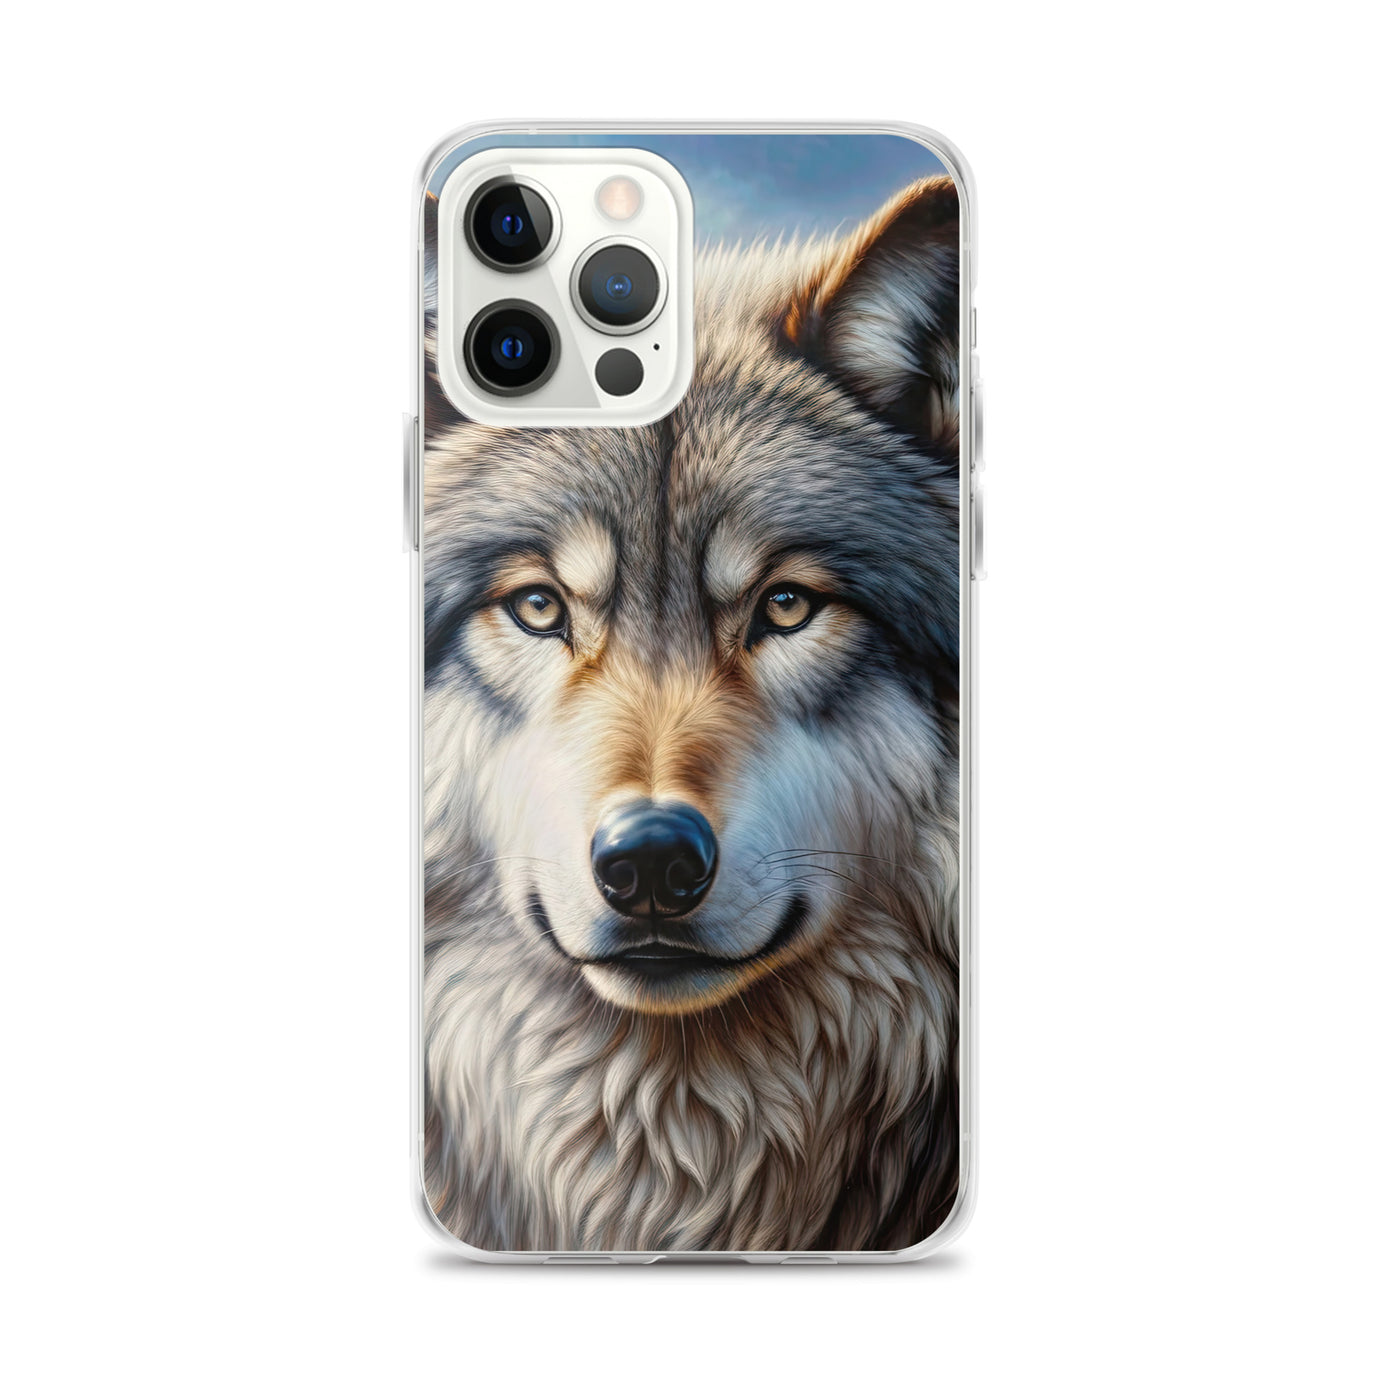 Porträt-Ölgemälde eines prächtigen Wolfes mit faszinierenden Augen (AN) - iPhone Schutzhülle (durchsichtig) xxx yyy zzz iPhone 12 Pro Max